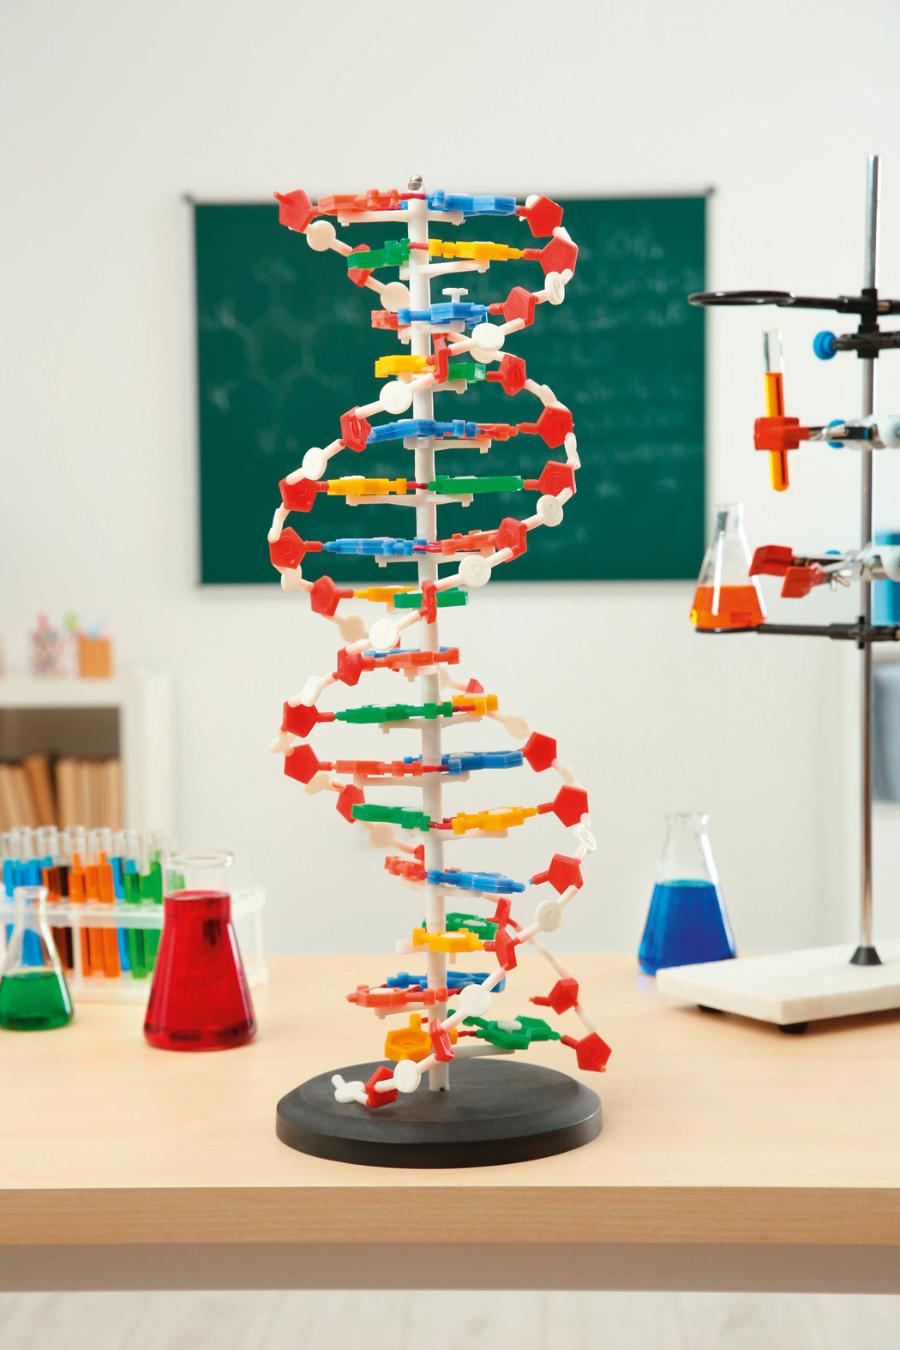 Postępując według podanej w tekście instrukcji, uzyskasz model DNA w kształcie podwójnej helisy.